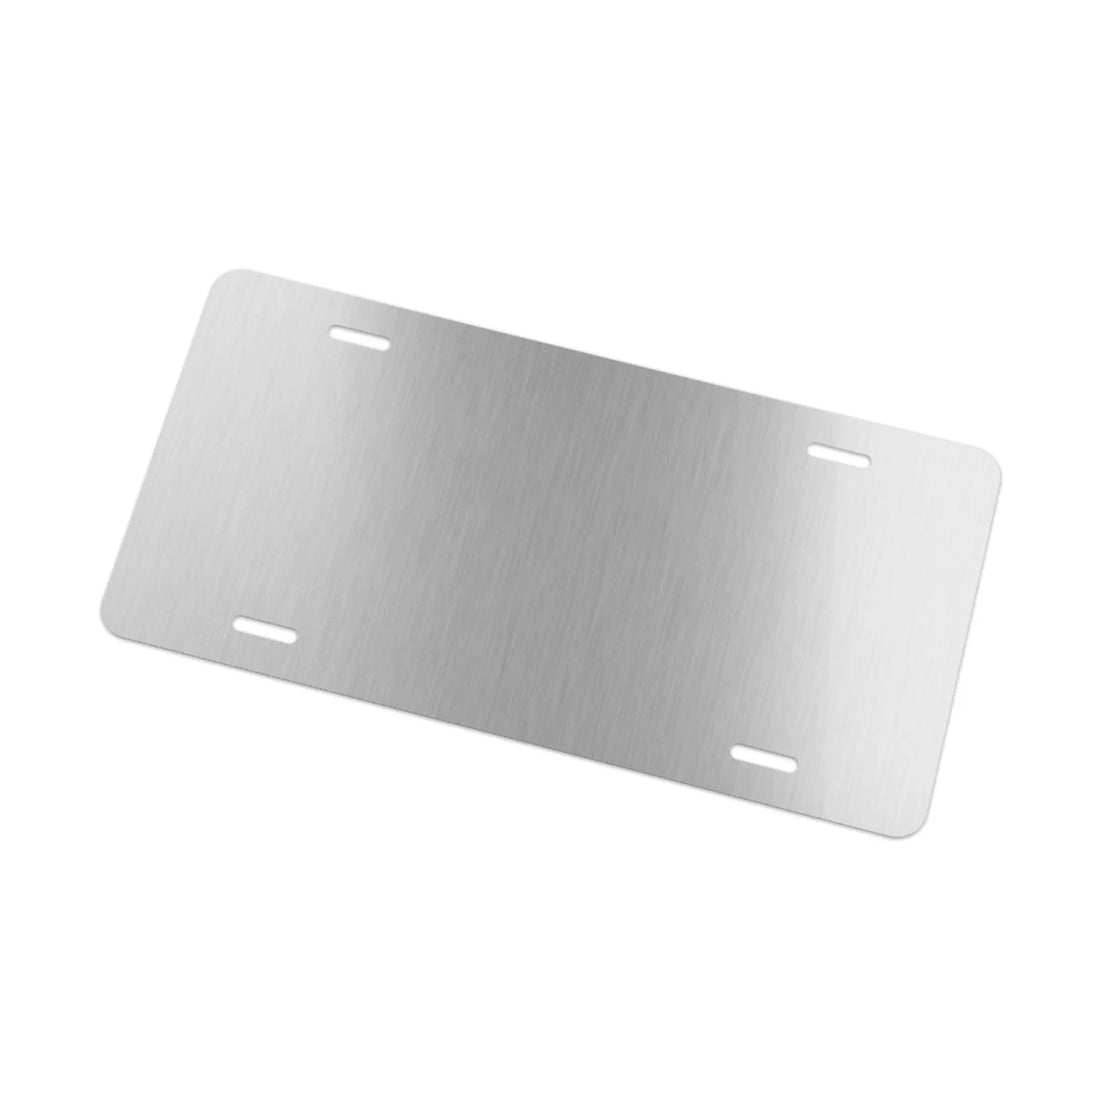 BCC Splatter Plate - Accessories - Positively Sassy - BCC Splatter Plate